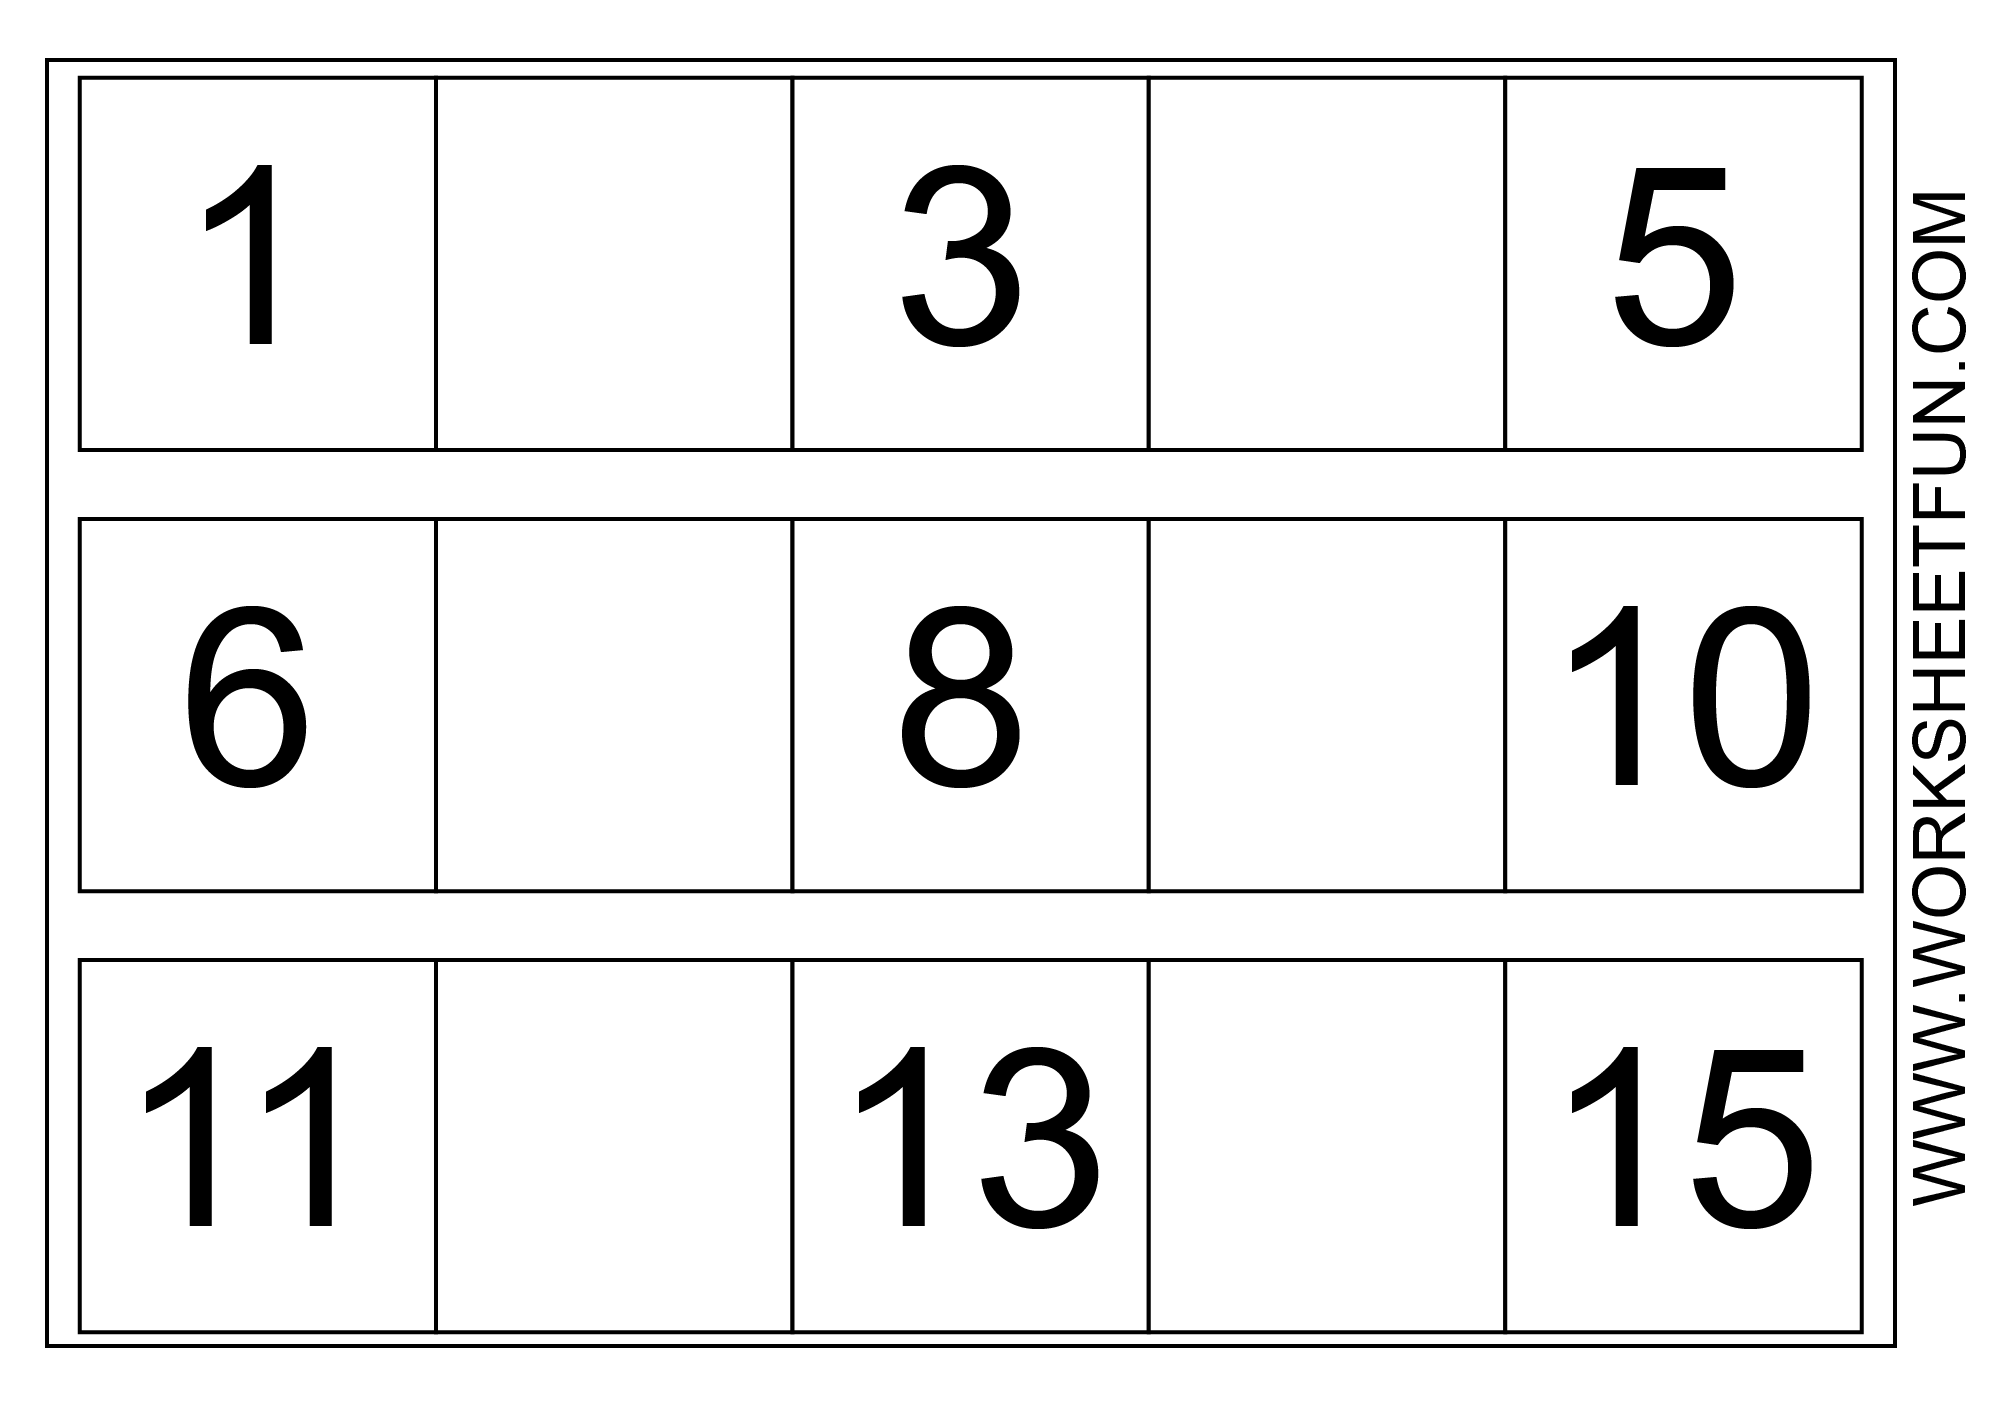 Kindergarten Missing Number Worksheet Image